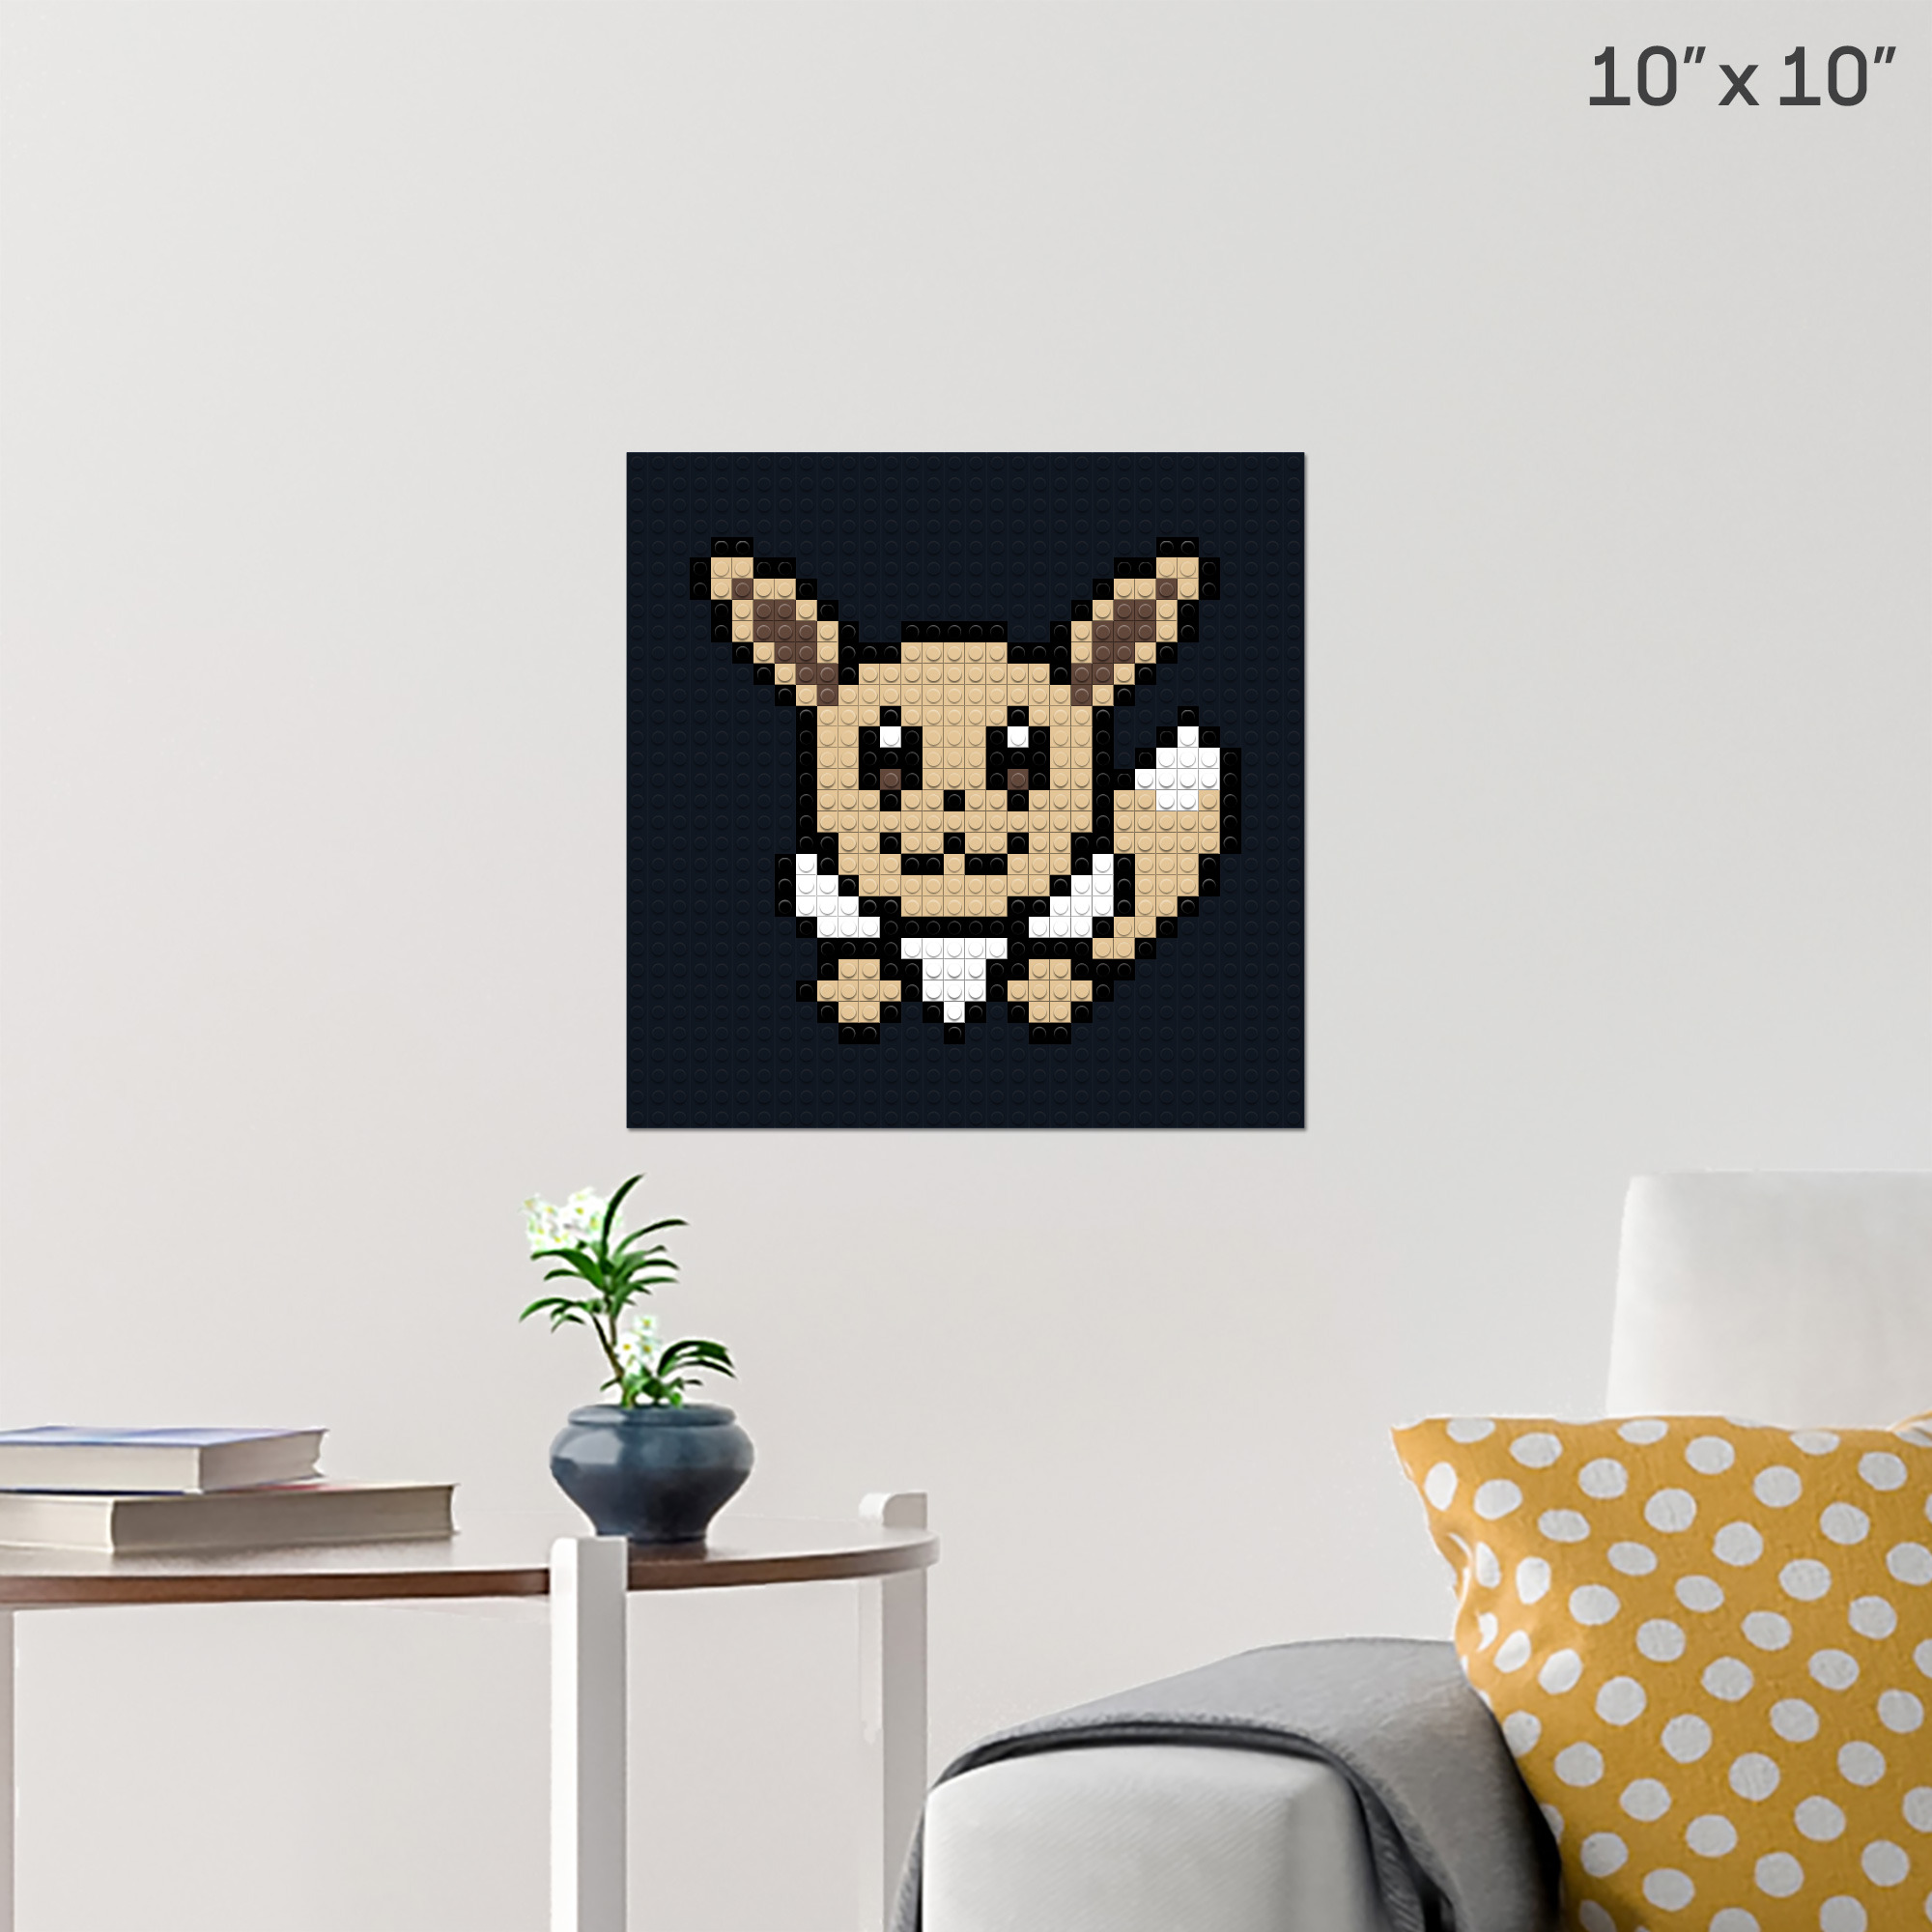 Mimikyu  Pixel art pokemon, Pixel art pattern, Pokemon cross stitch